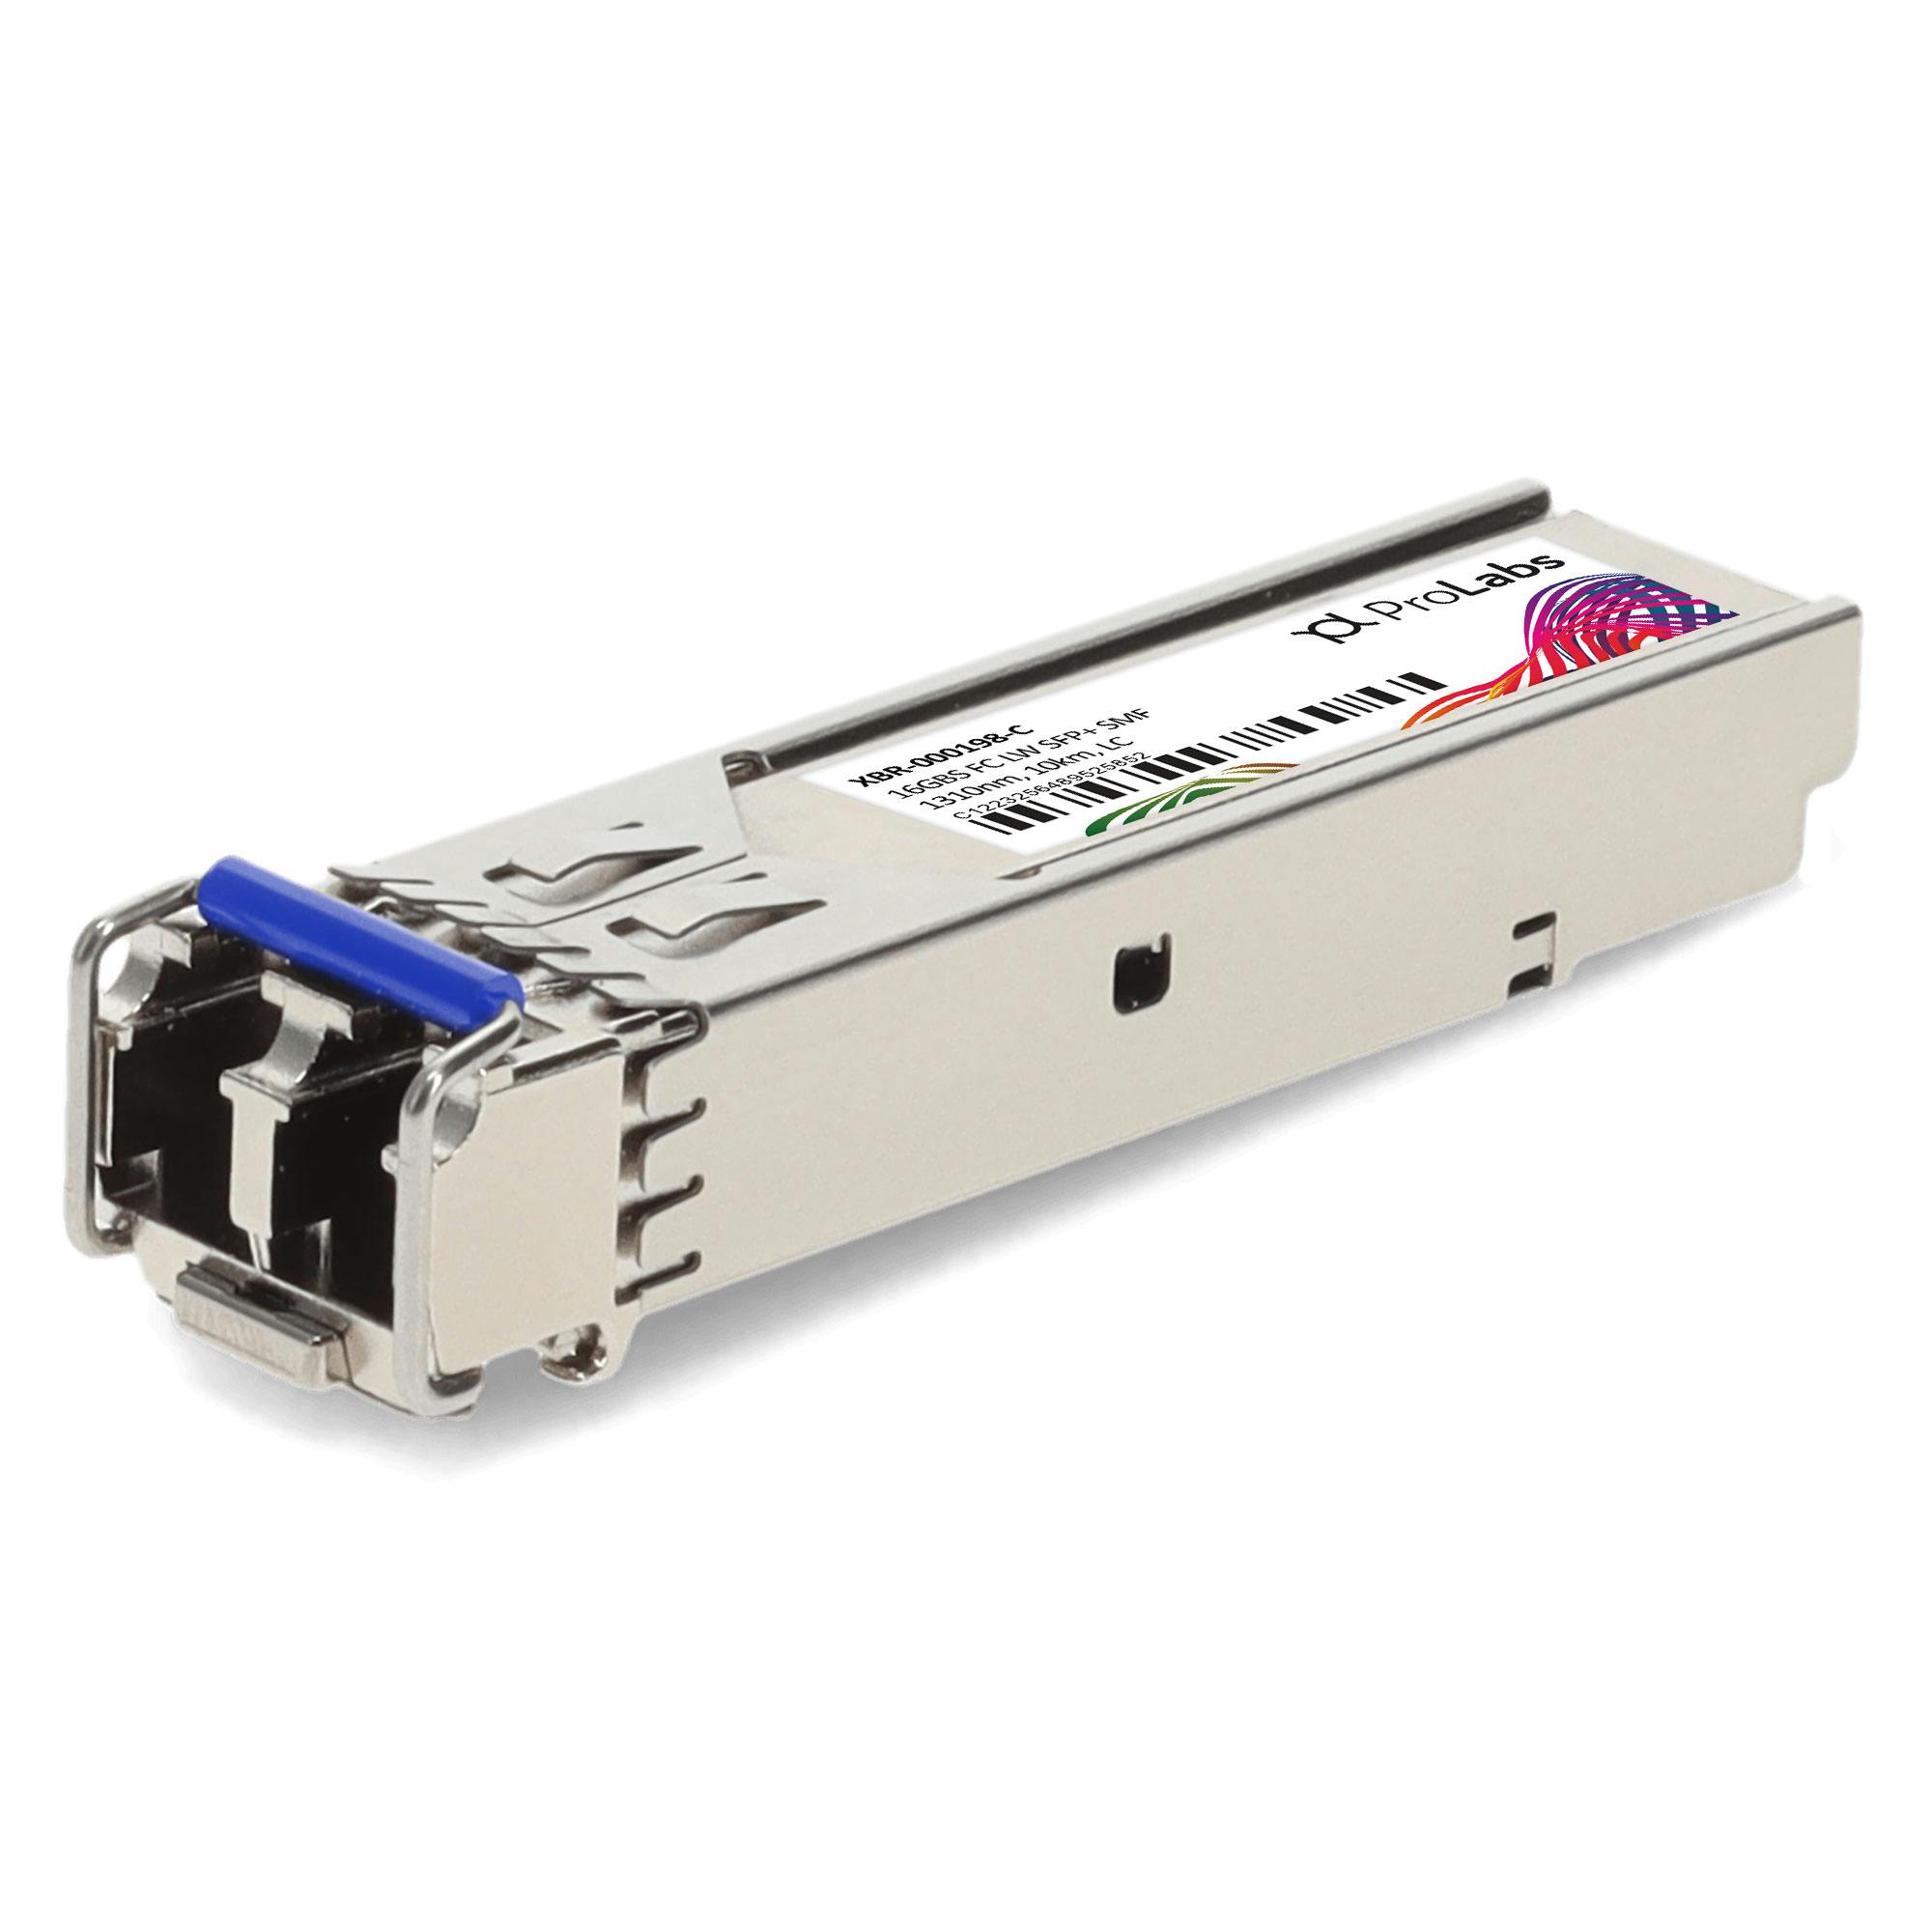 Transceiver Brocade Compatible XBR-000182 10GBASE-LR SFP 10G LR SMF 1310nm XBR-000182-HPC 